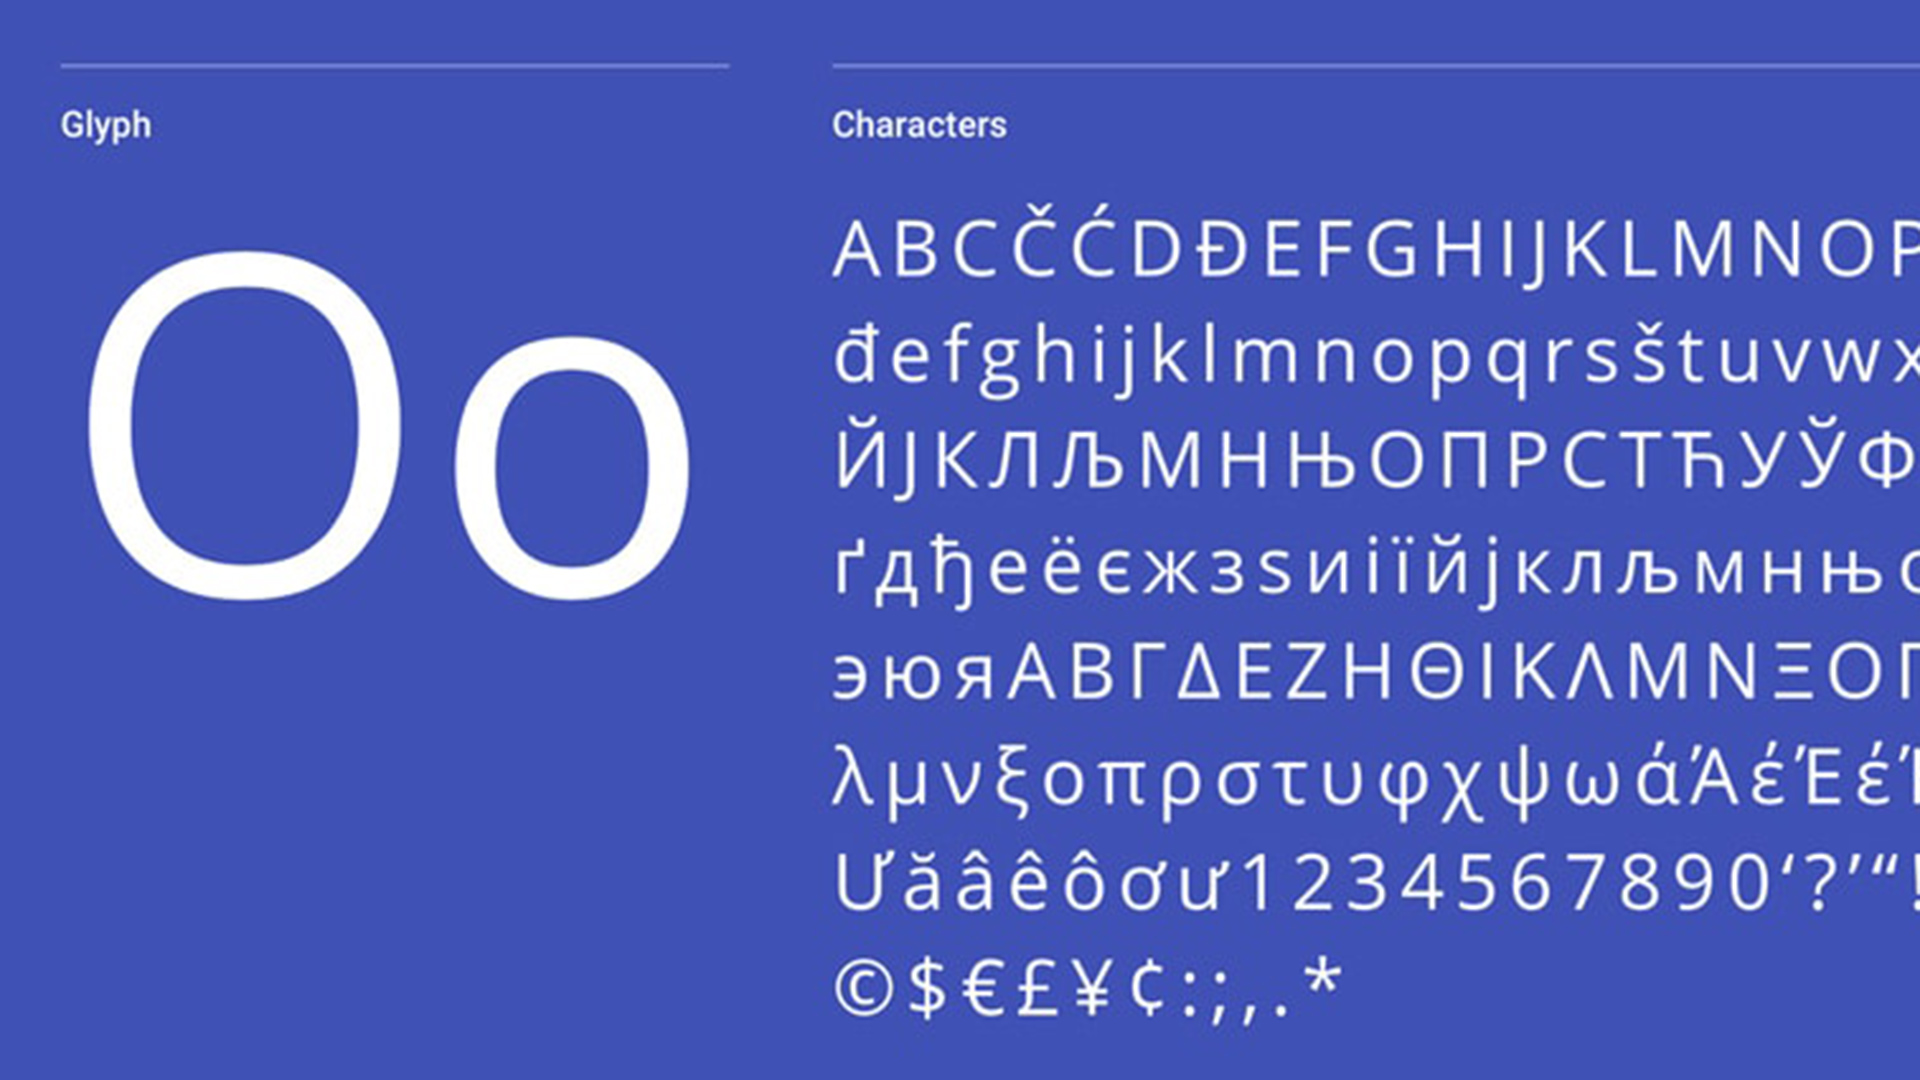 popular sans serif typeface nyt